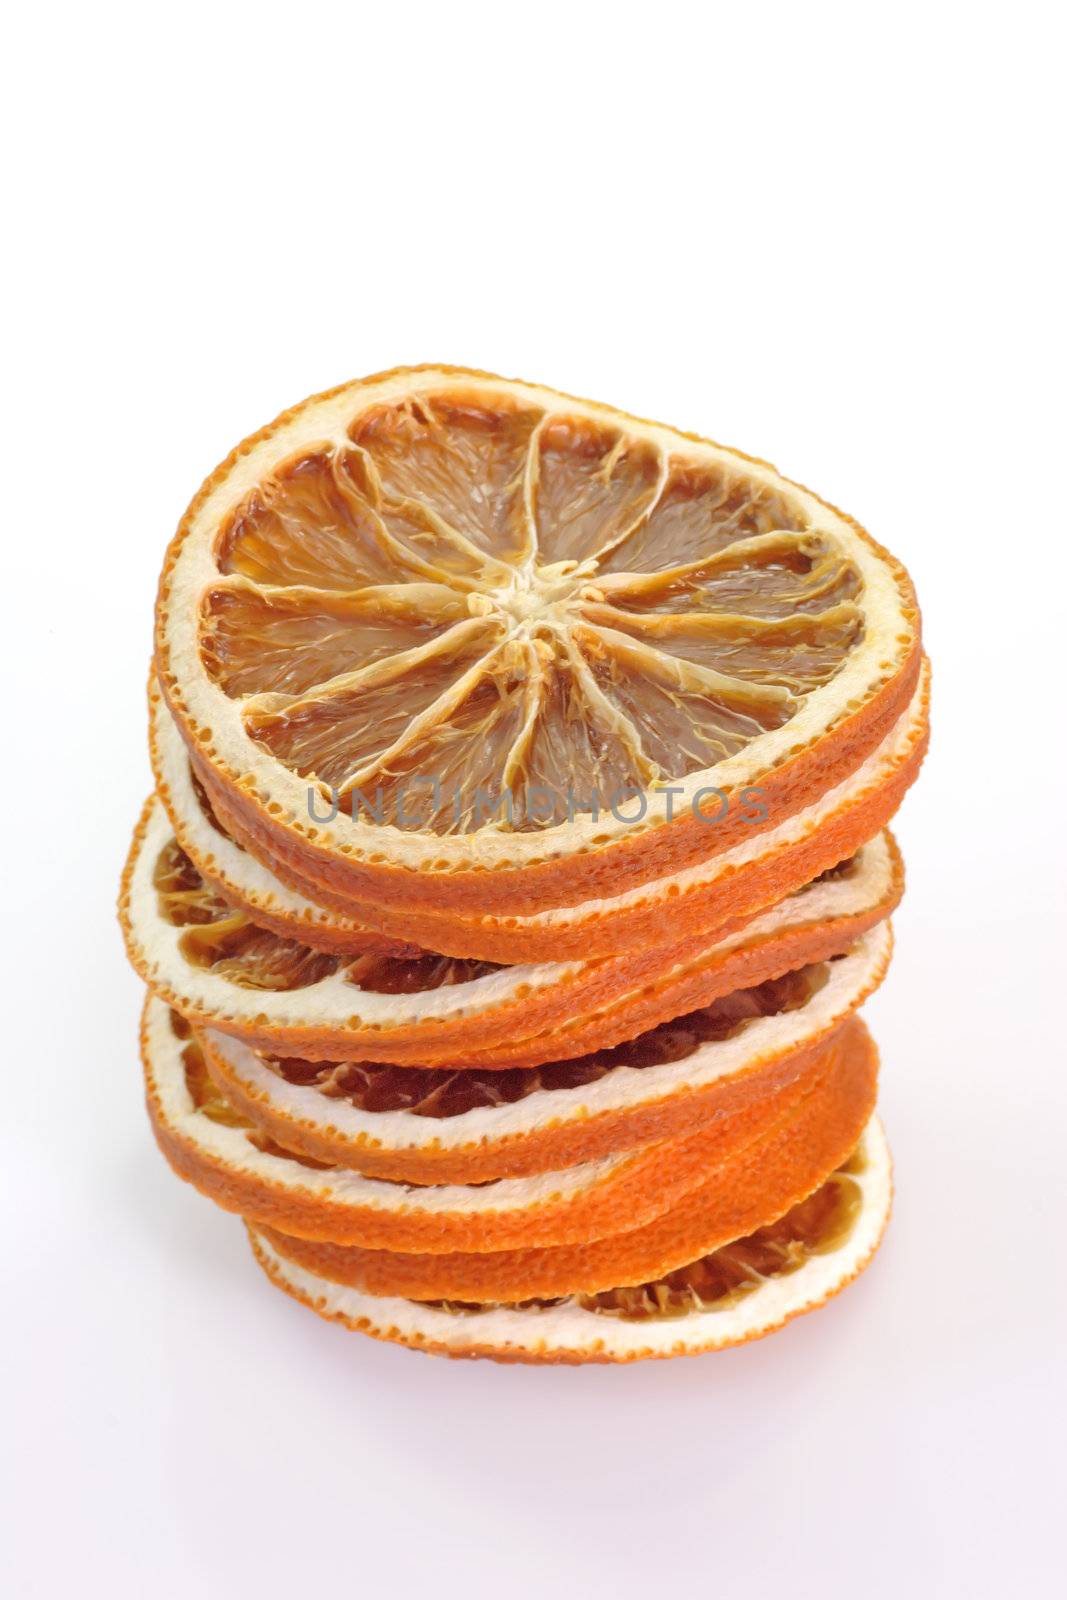 Dried Orange Slices by Teamarbeit